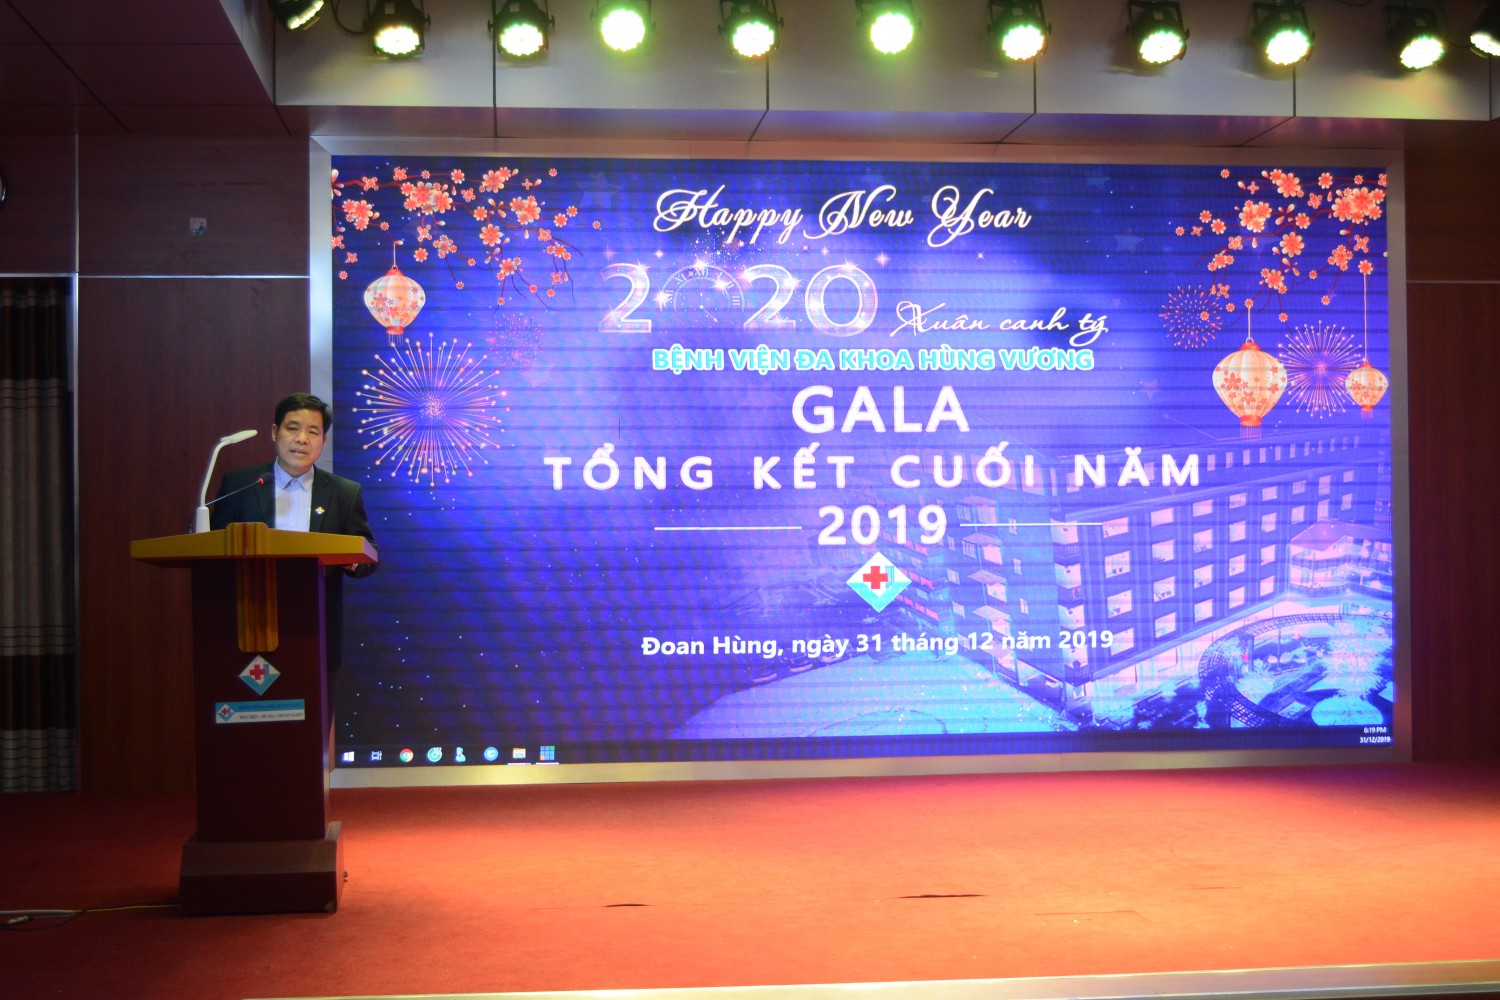 Bệnh viện đa khoa Hùng Vương tổ chức Gala tổng kết năm 2019